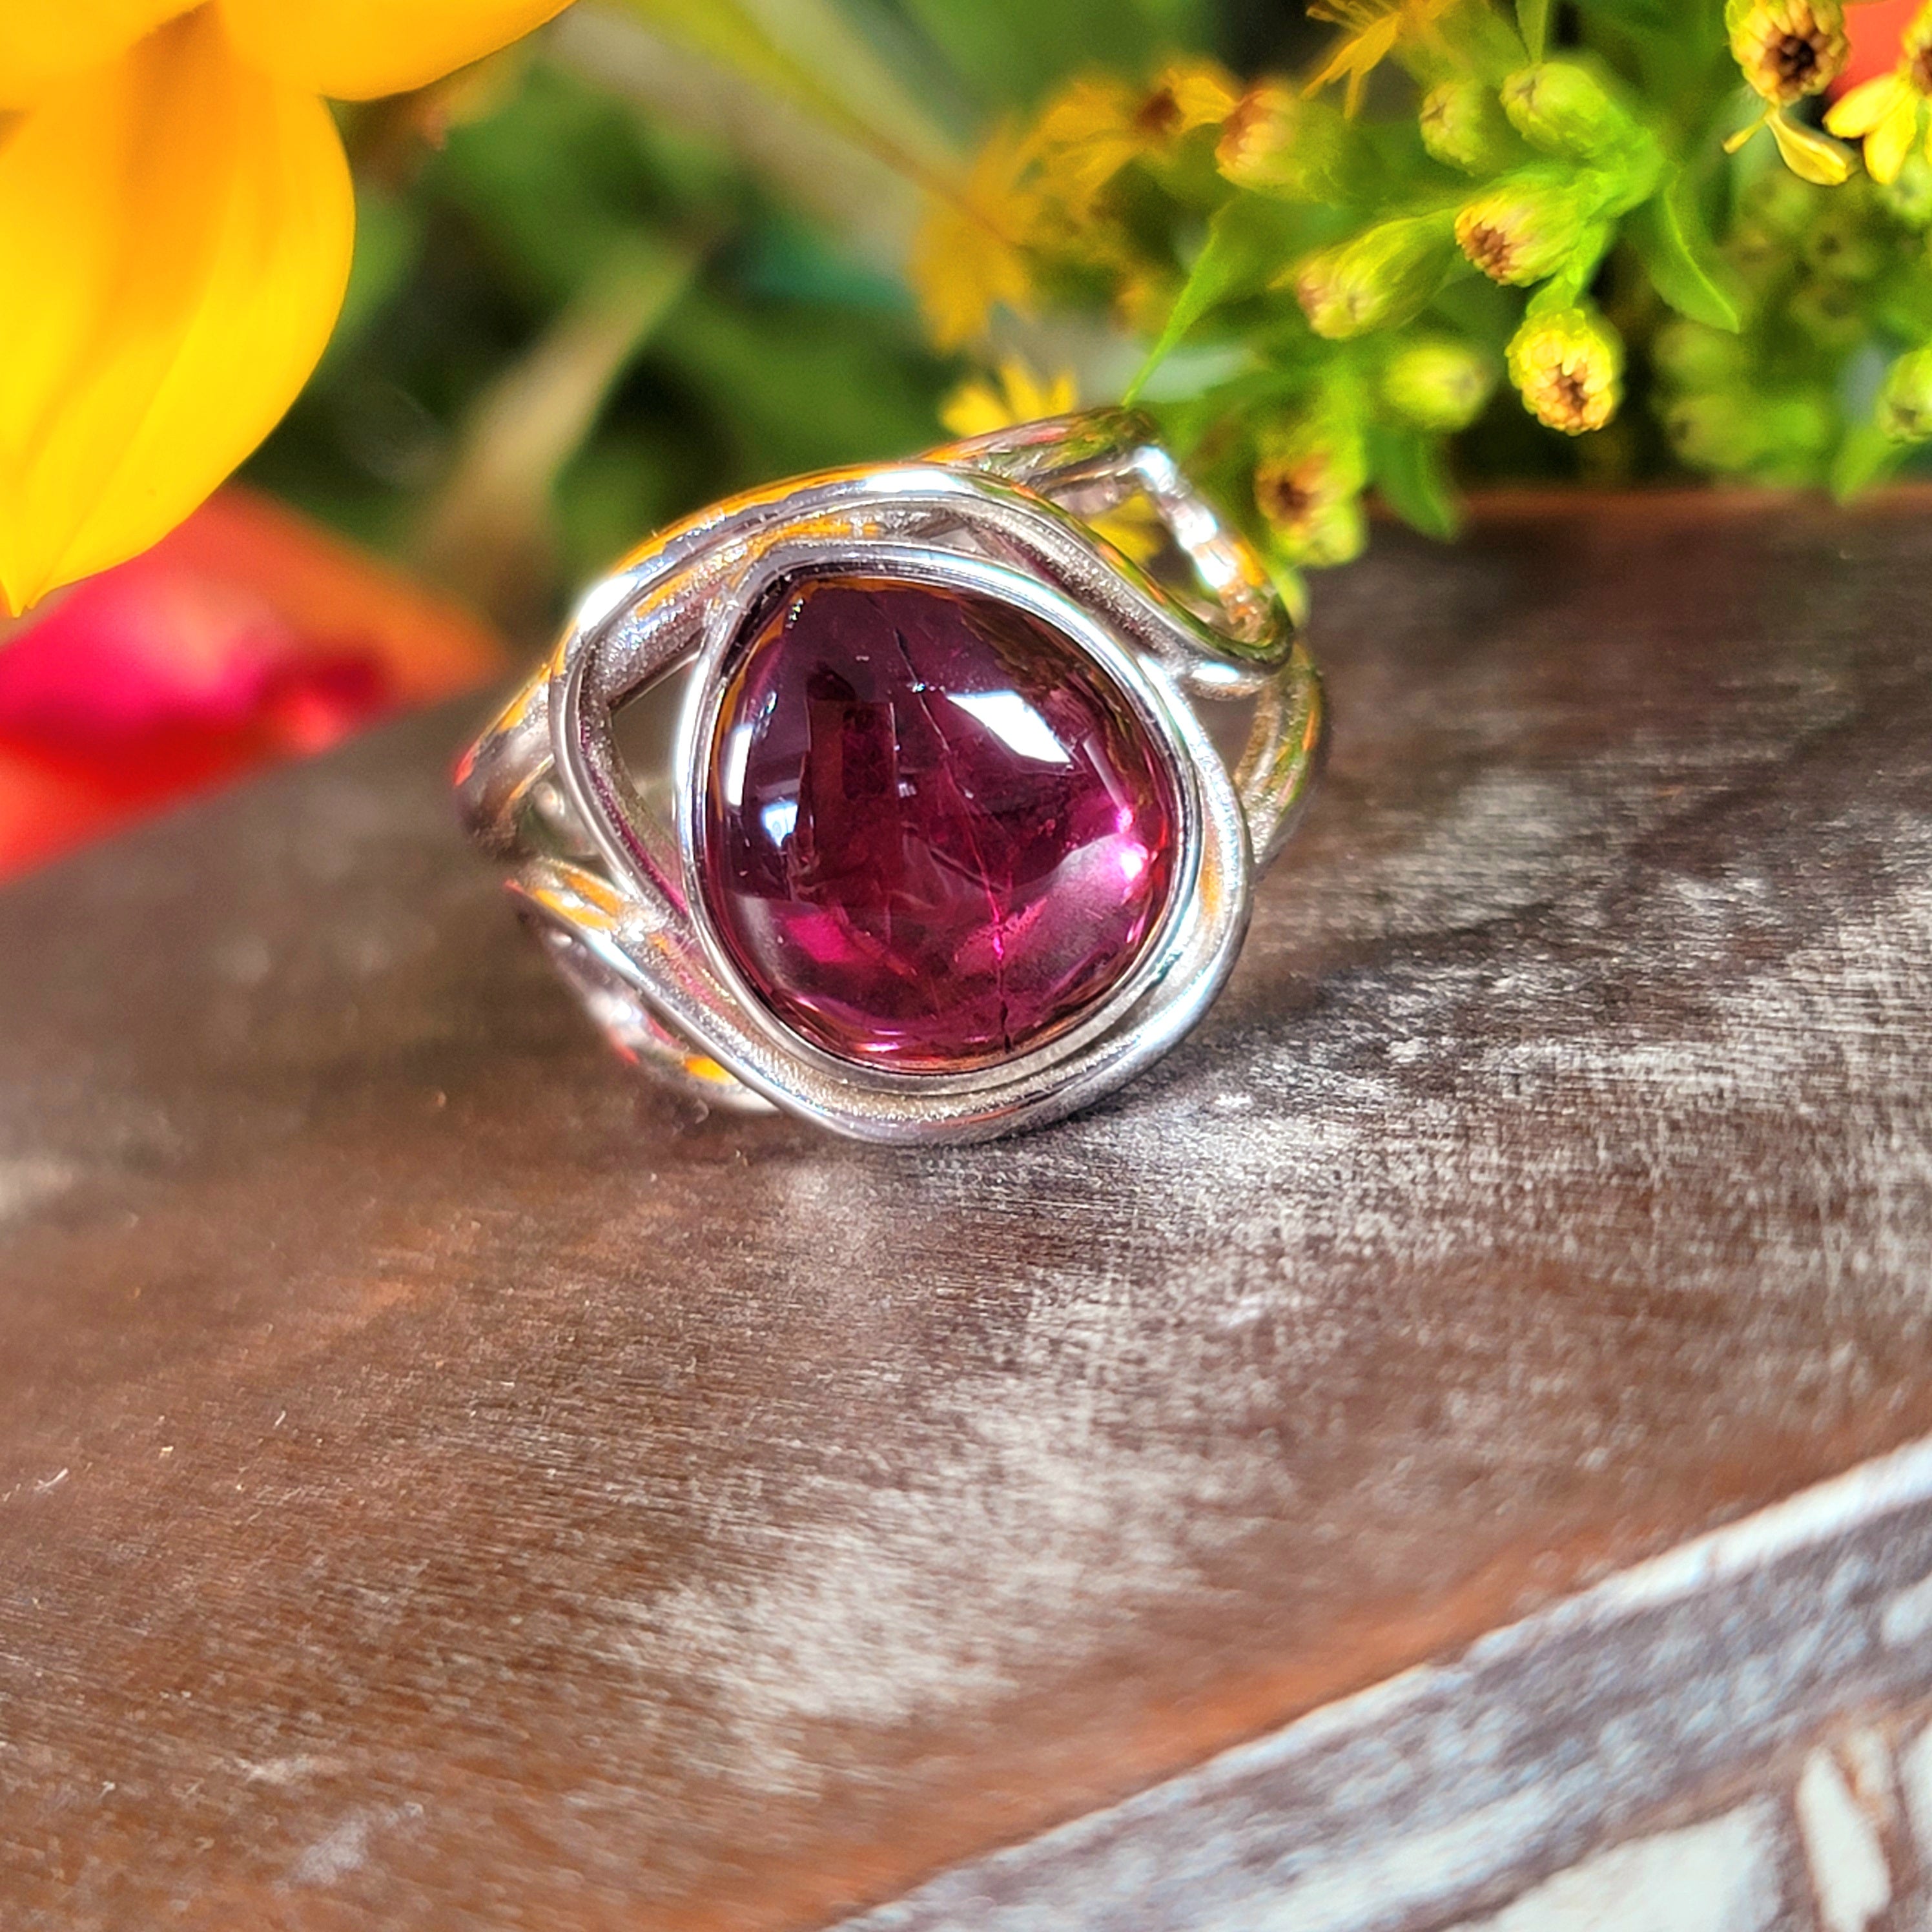 Rhodolite Purple Garnet Adjustable Finger Bracelet .925 Silver for Connection with Angels and Spirit Guides